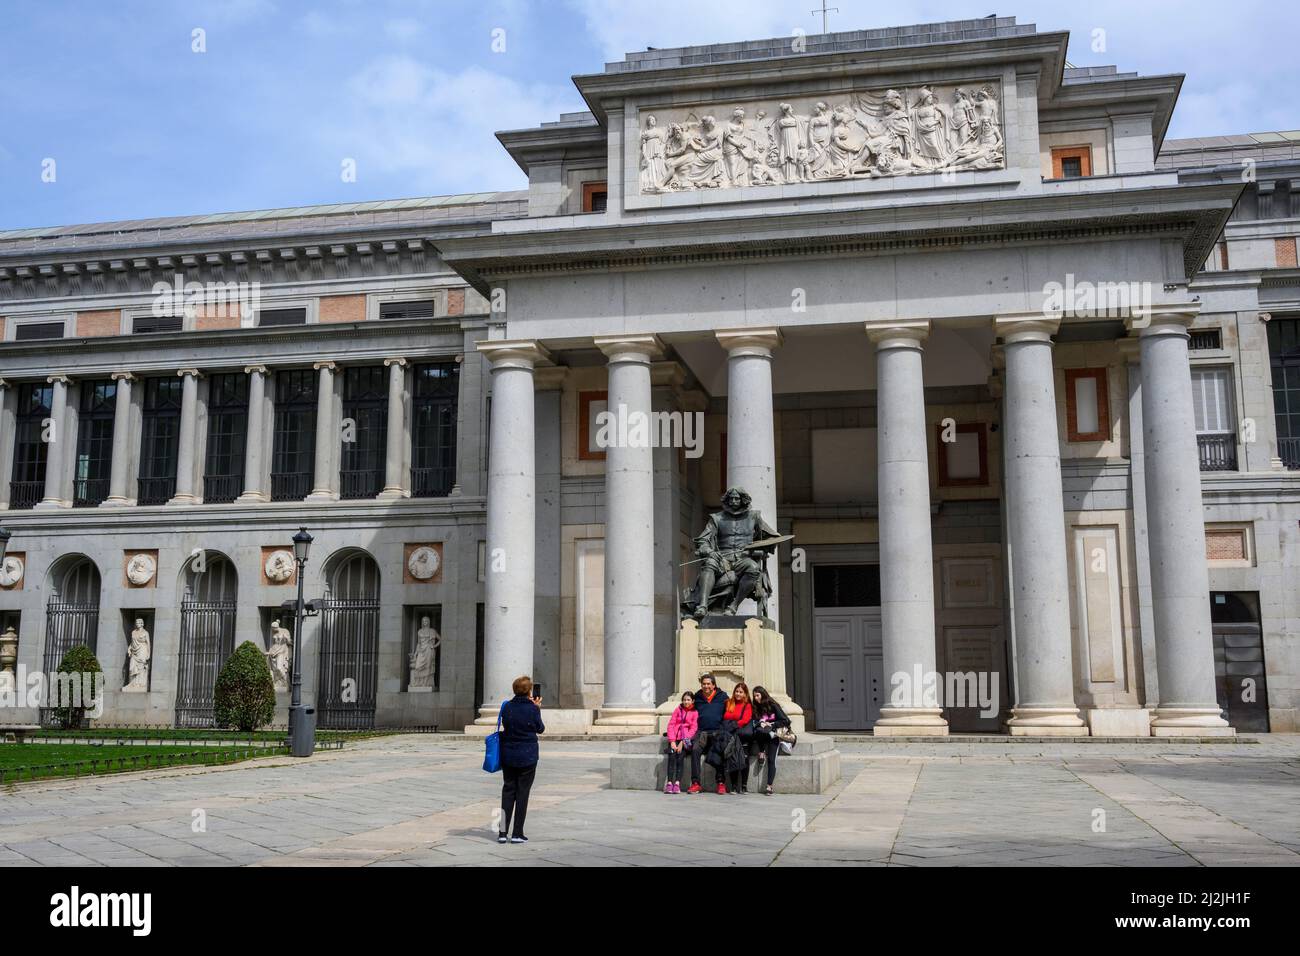 Besucher, die ein Familienfoto mit einer Statue des Künstlers Diego Velázquez am Eingang des Prado Museums in Madrid, Spanien, machen. Stockfoto